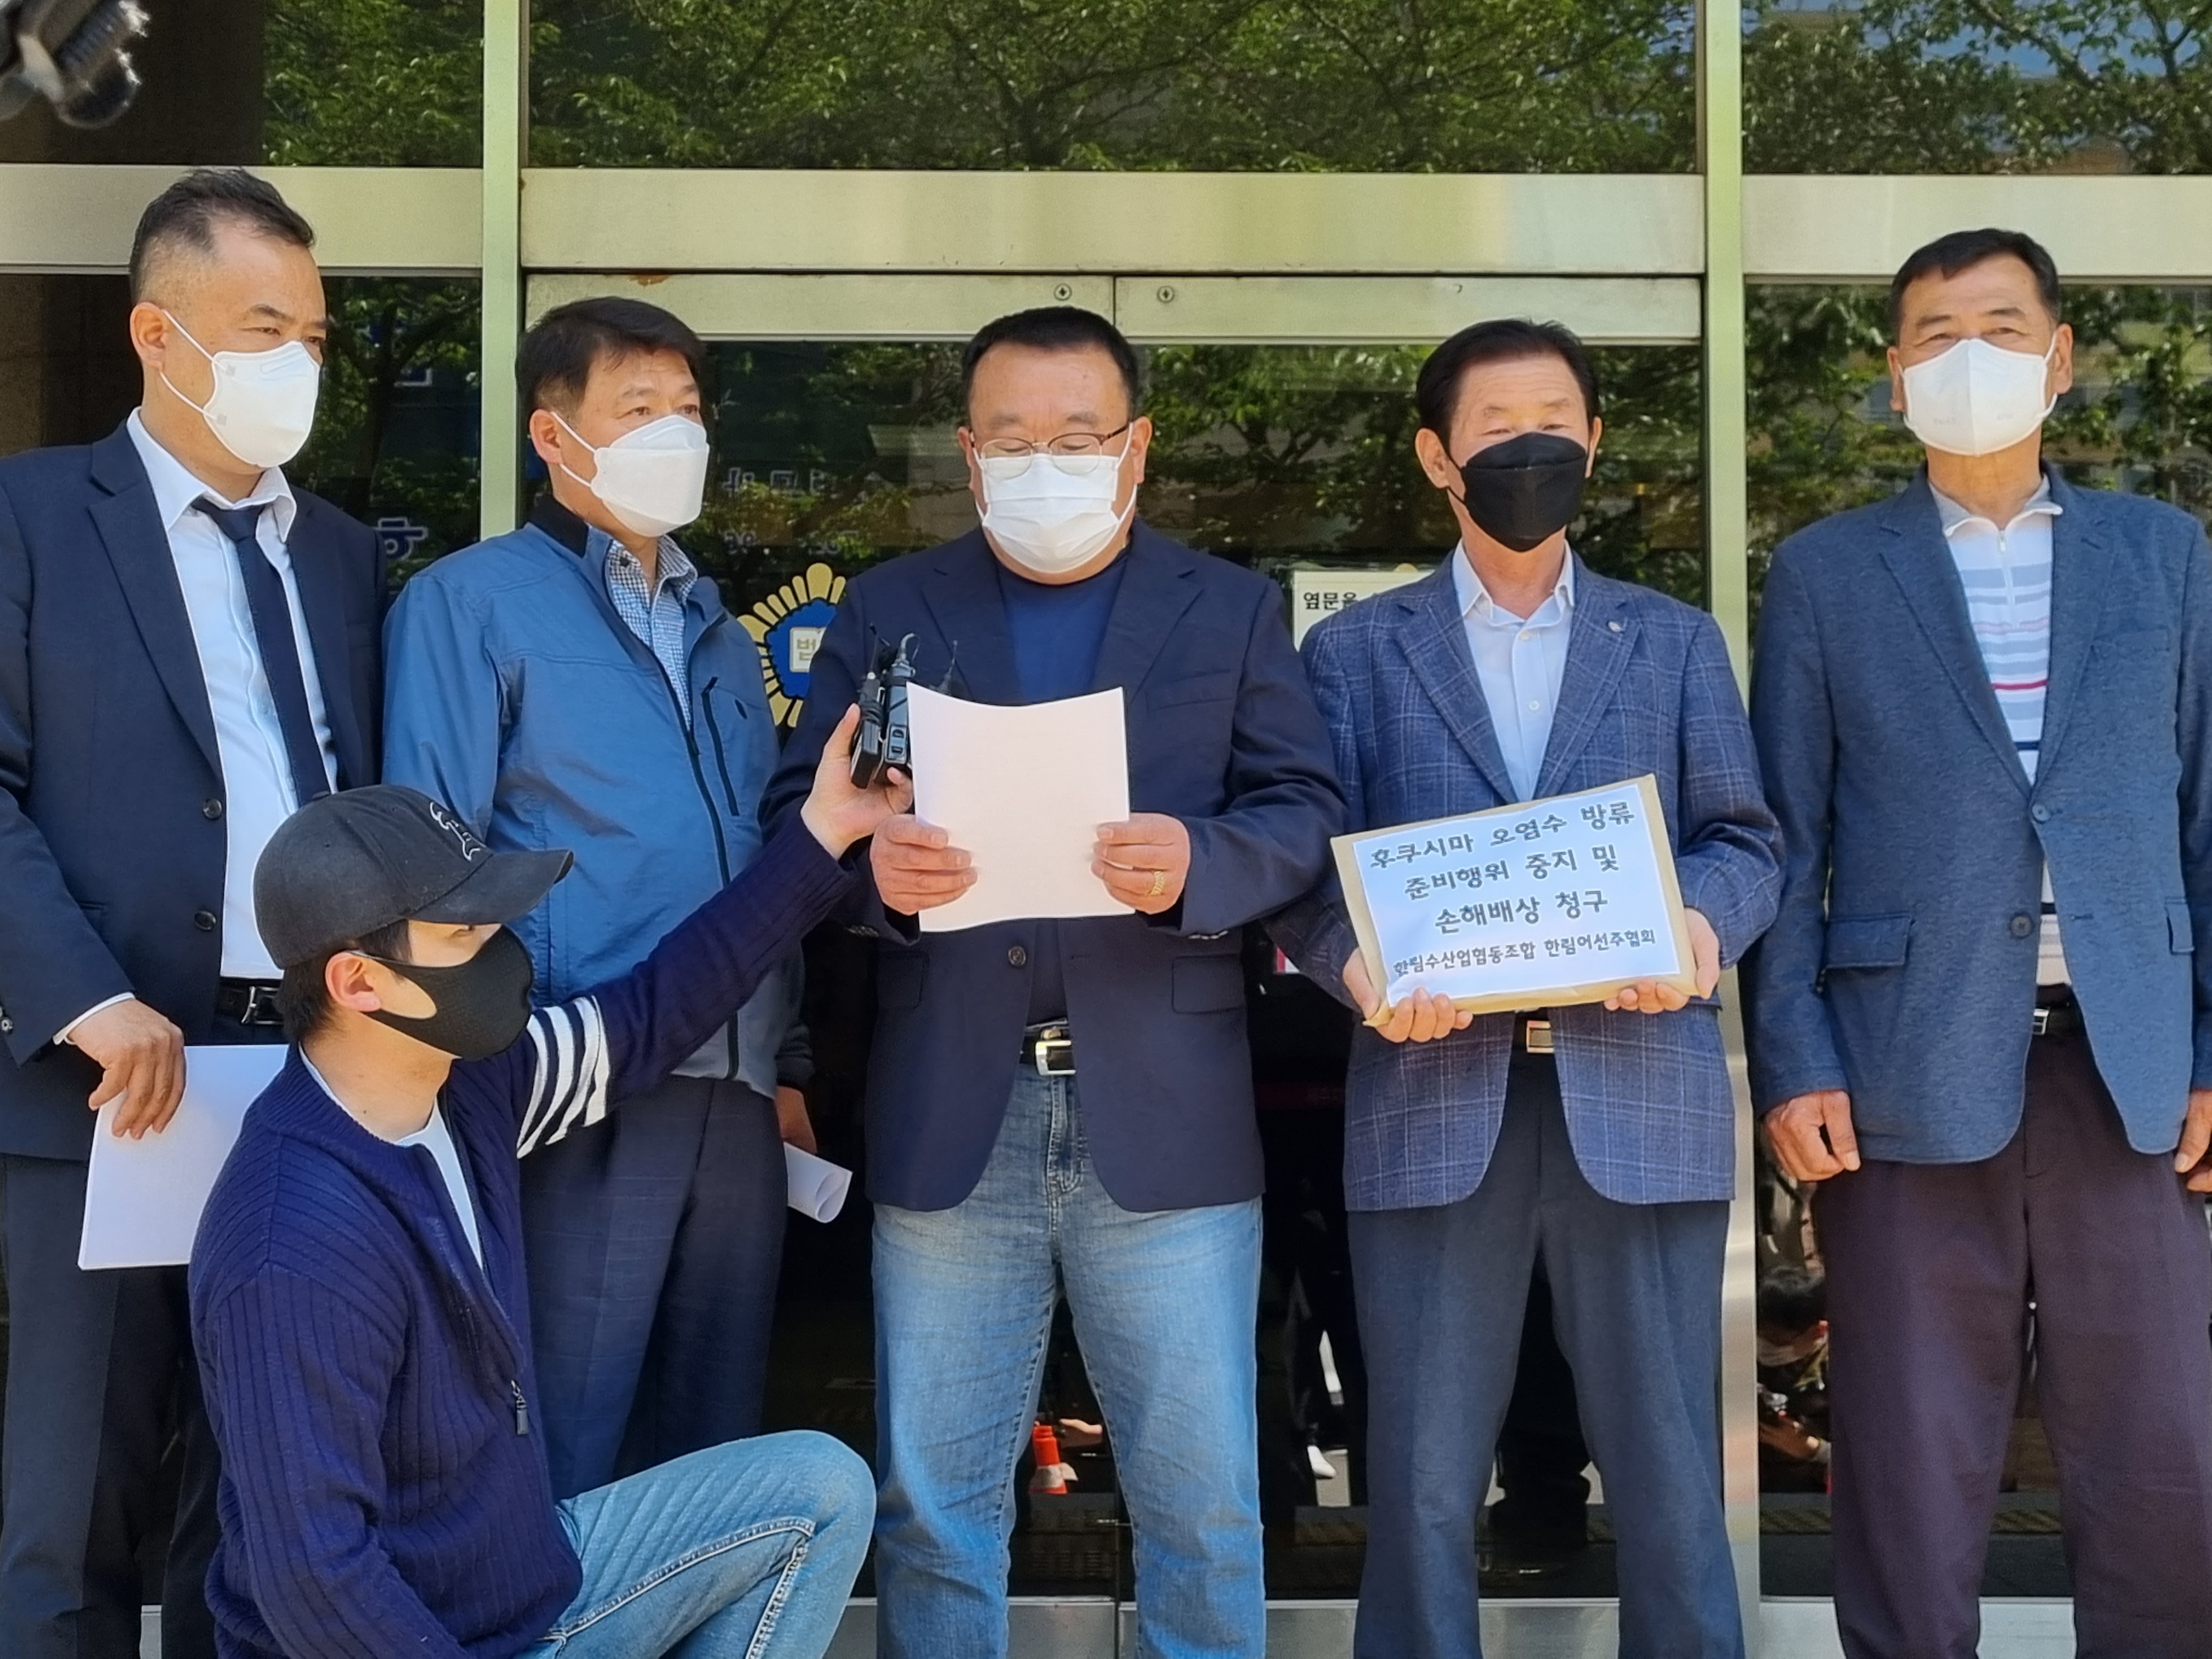 제주한림수산업협동조합과 한림어선주협회가 13일 제주지방법원 민원실에 일본 정부와 도쿄전력을 상대로 손해배상 청구 소장을 접수했다.